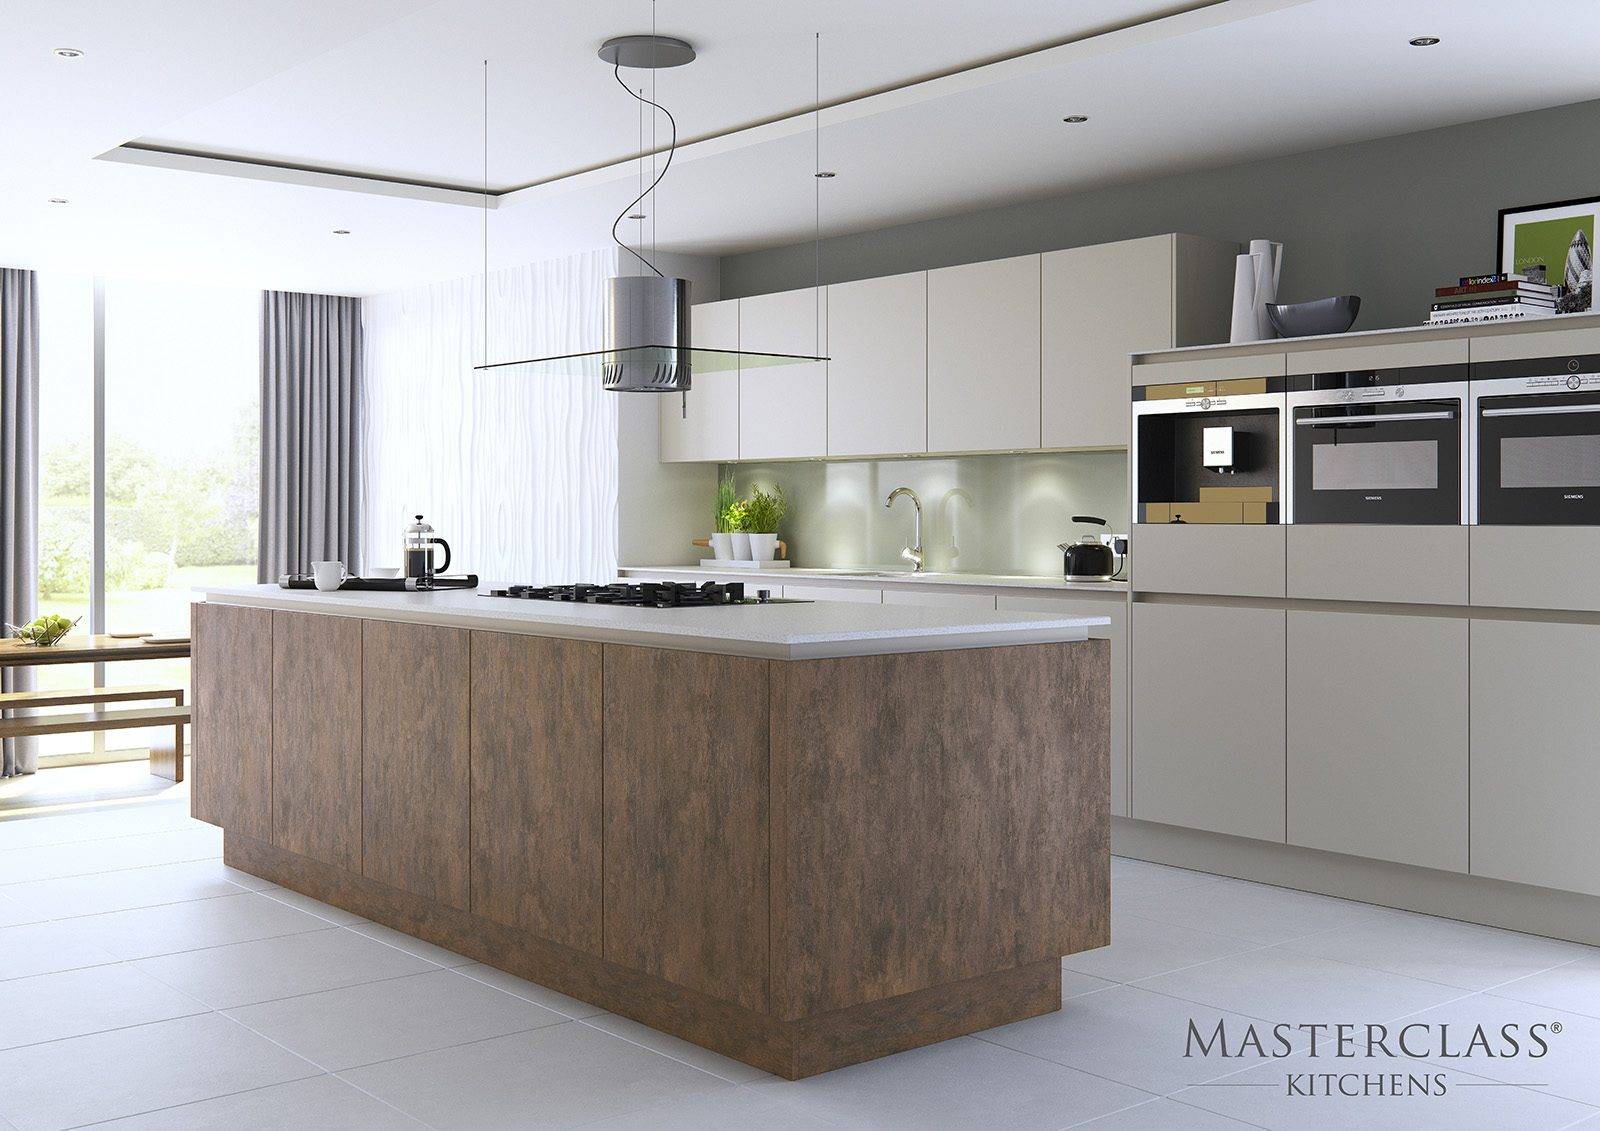 Masterclass Matt Handleless Kitchen With Copper Oxide Island | Plum-Mex, Farnham